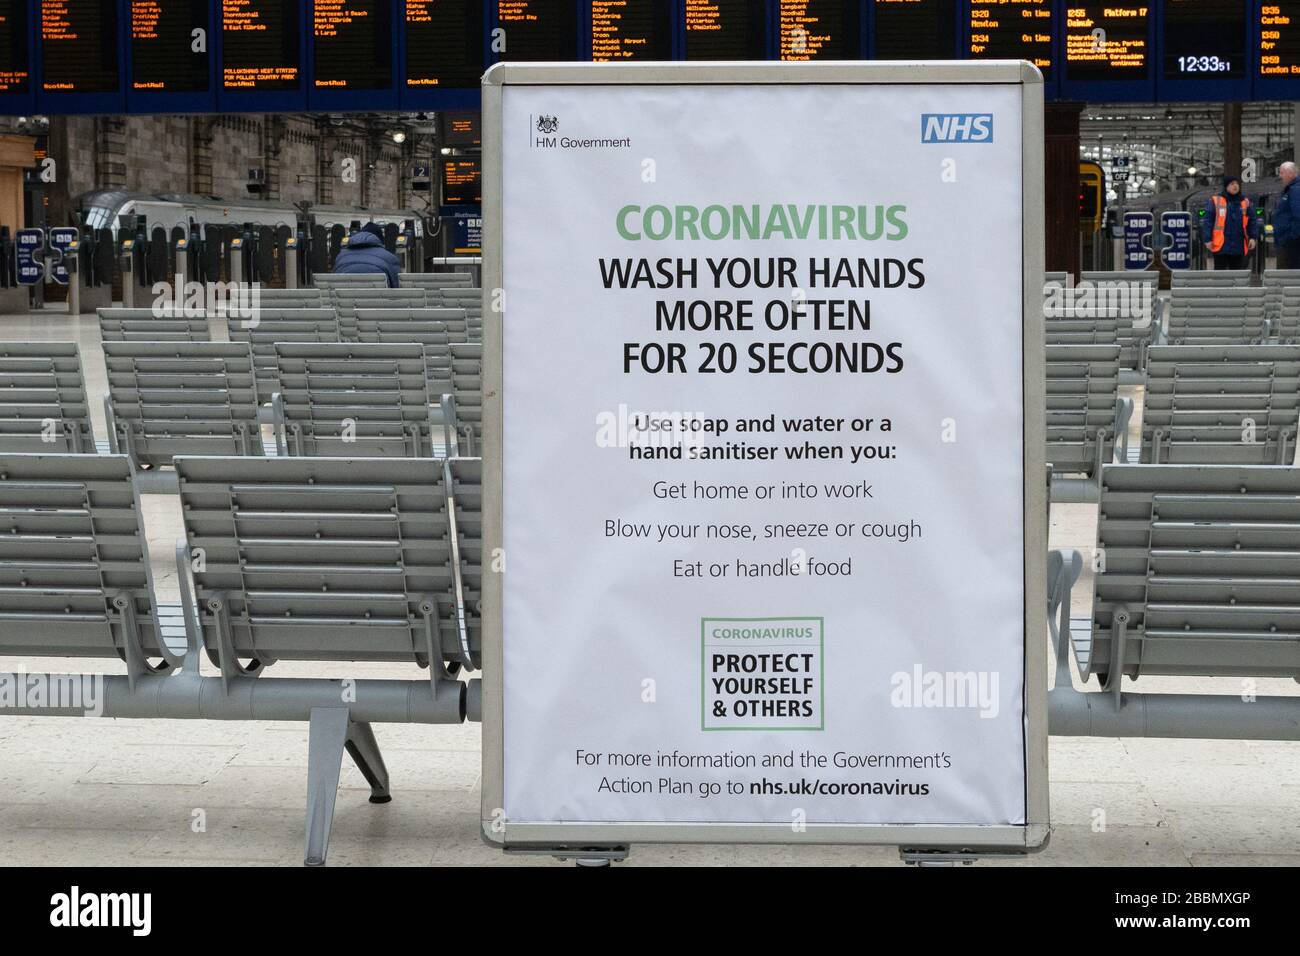 Coronavirus UK - waschen Sie sich öfter die Hände für 20 Sekunden Schild in einer sehr ruhigen Glasgow Central Station, Glasgow, Schottland, Großbritannien Stockfoto